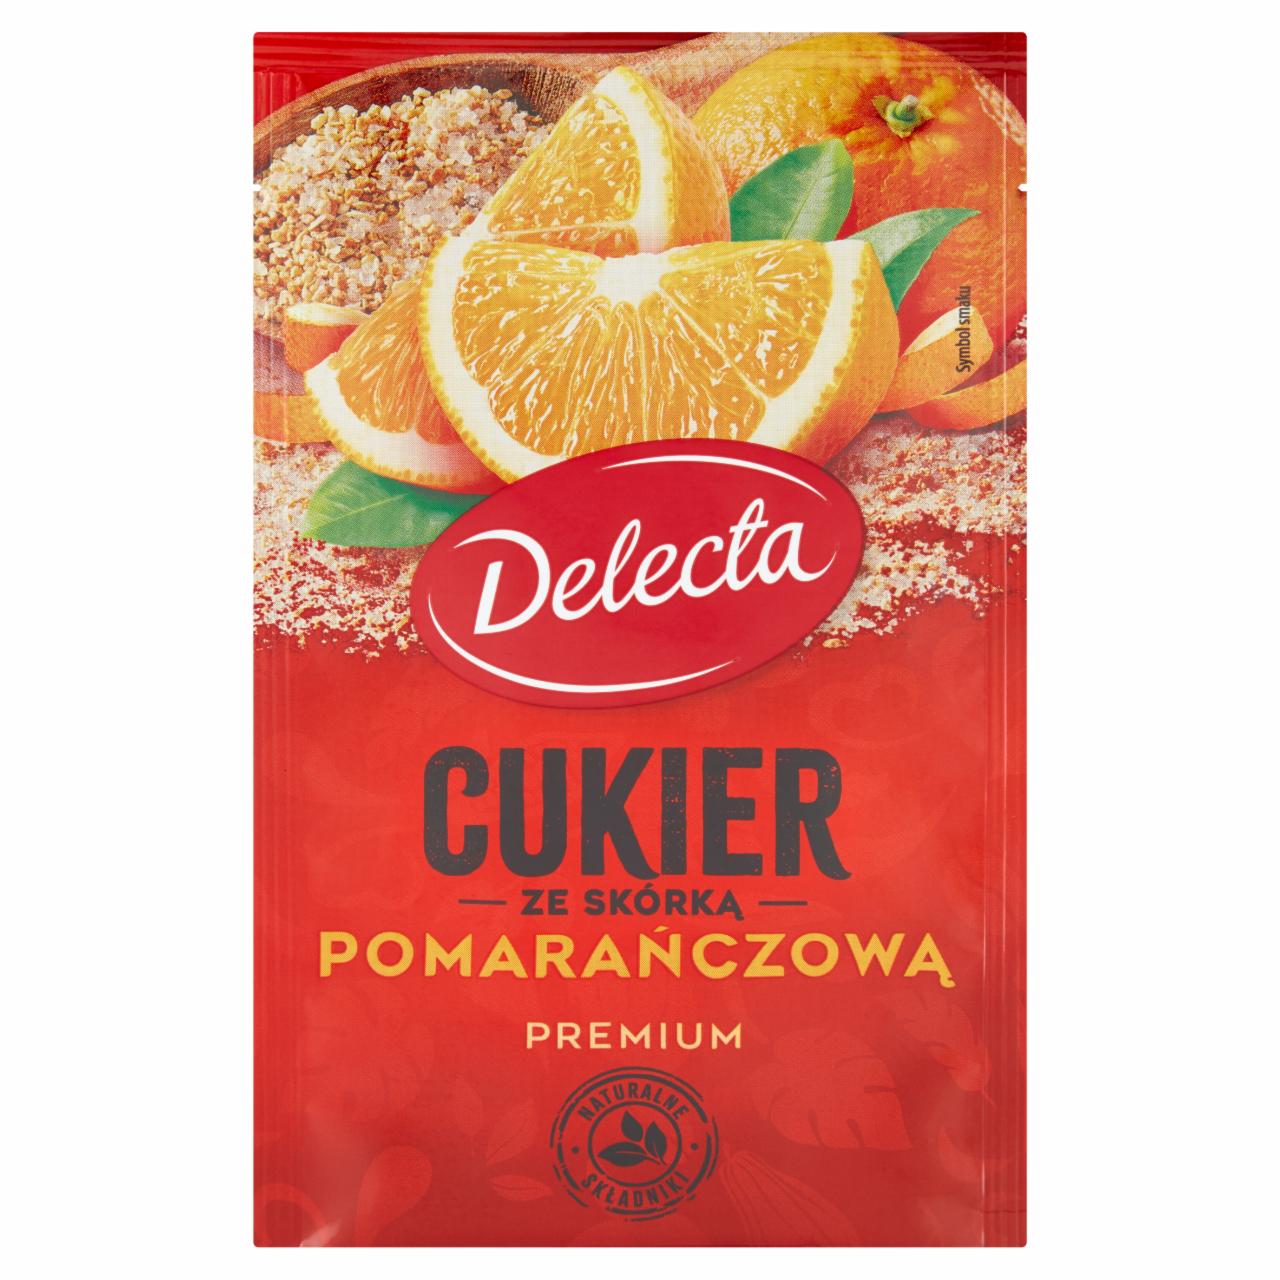 Zdjęcia - Delecta Premium Cukier ze skórką pomarańczową 15 g